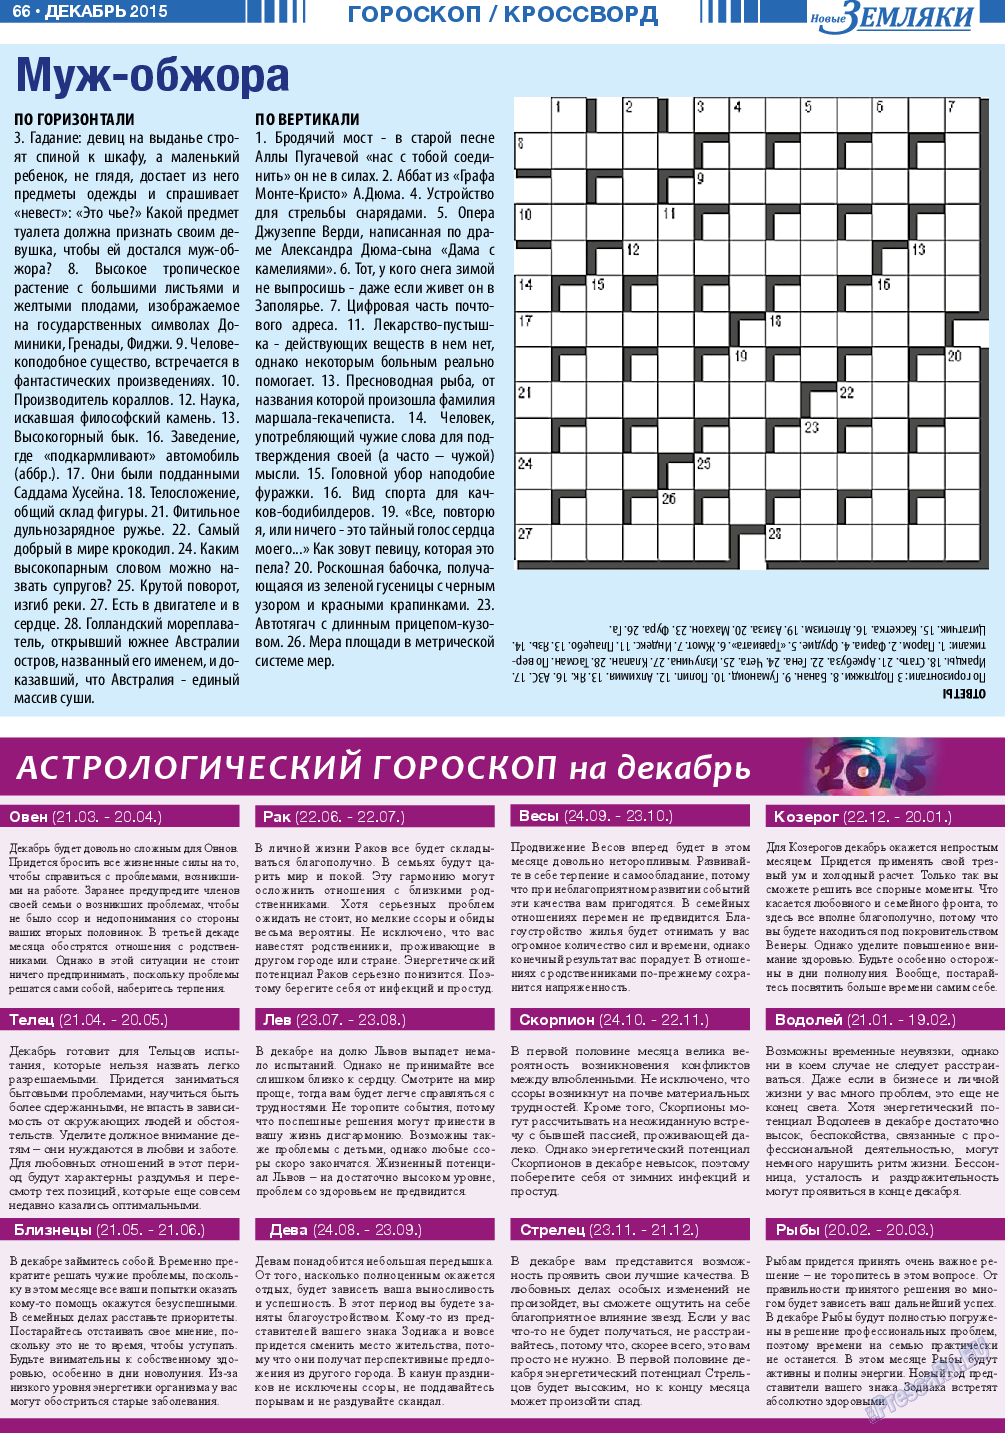 Новые Земляки (газета). 2015 год, номер 12, стр. 66